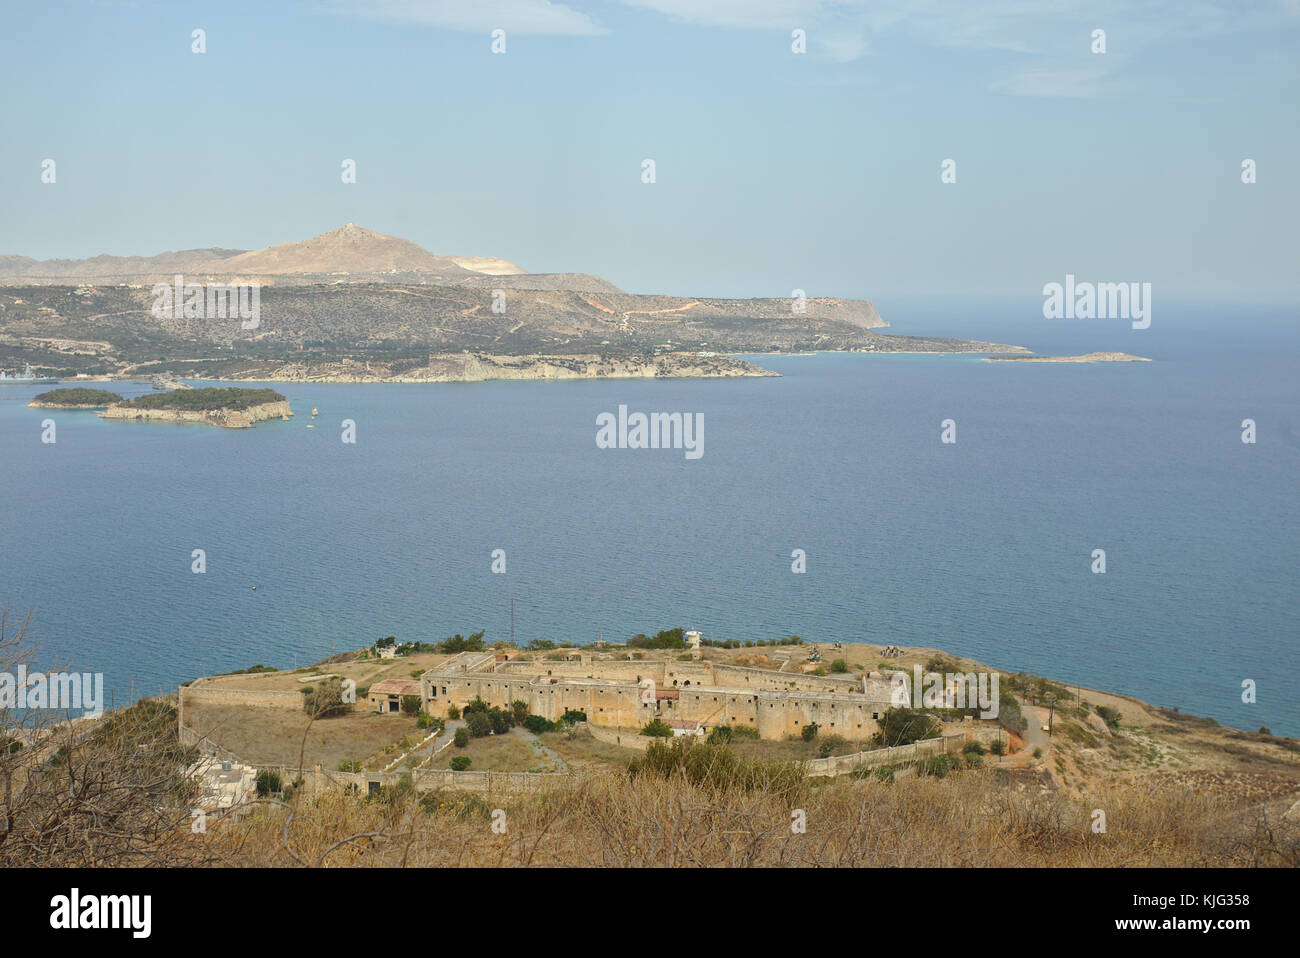 Die Ansicht der intzedin fort, einem ehemaligen griechischen politischen Gefängnis und Ausführung der Standort und die Bucht von Souda Hafen Halbinsel zu akrtiri Stockfoto